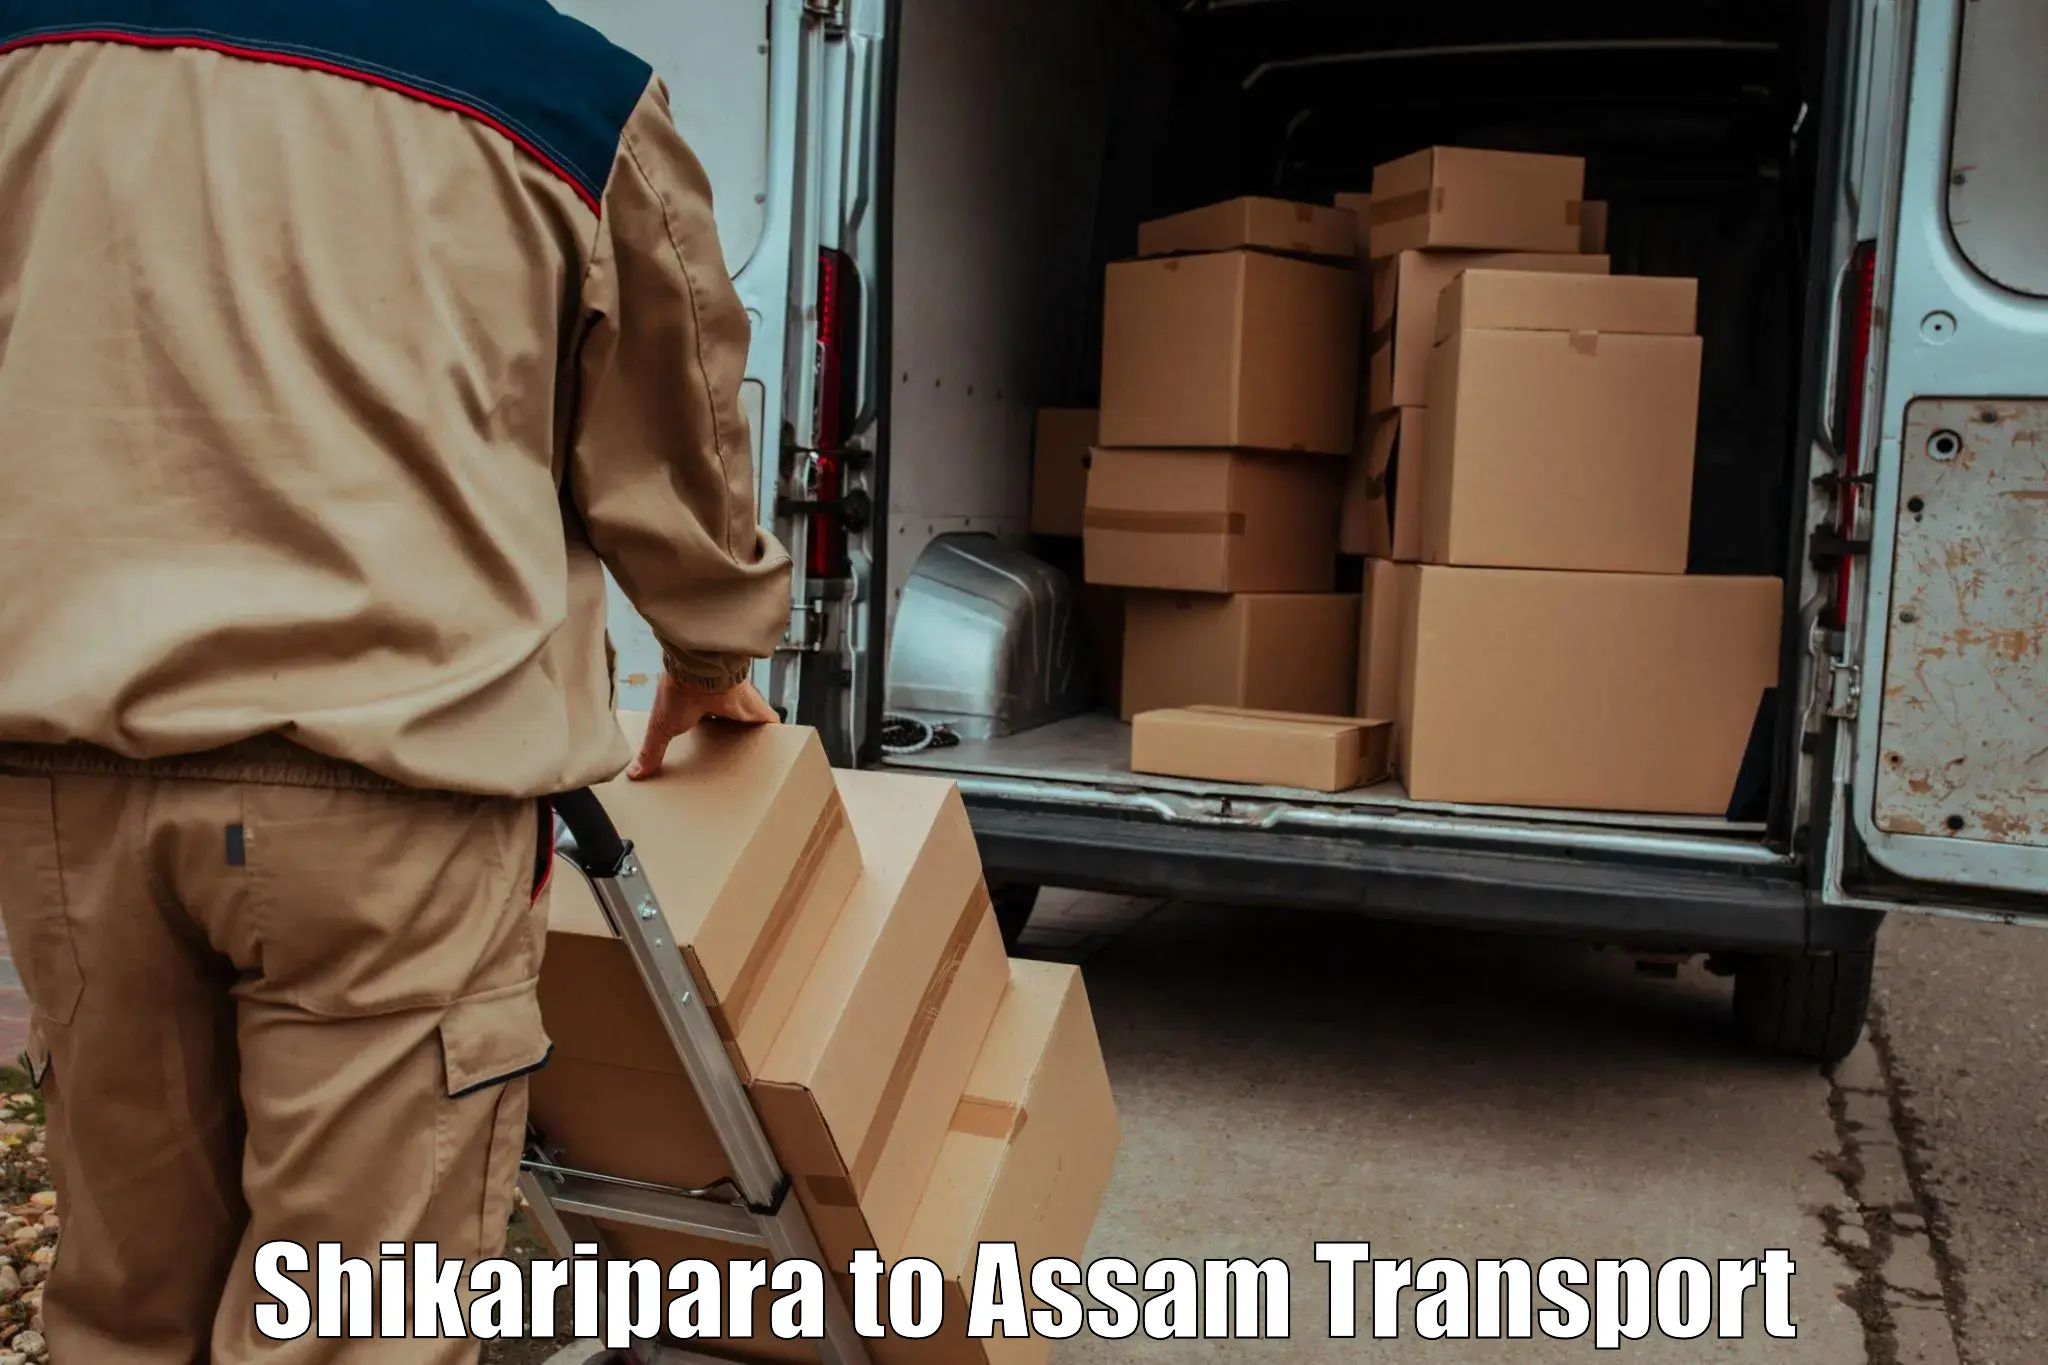 Bike transport service Shikaripara to Assam